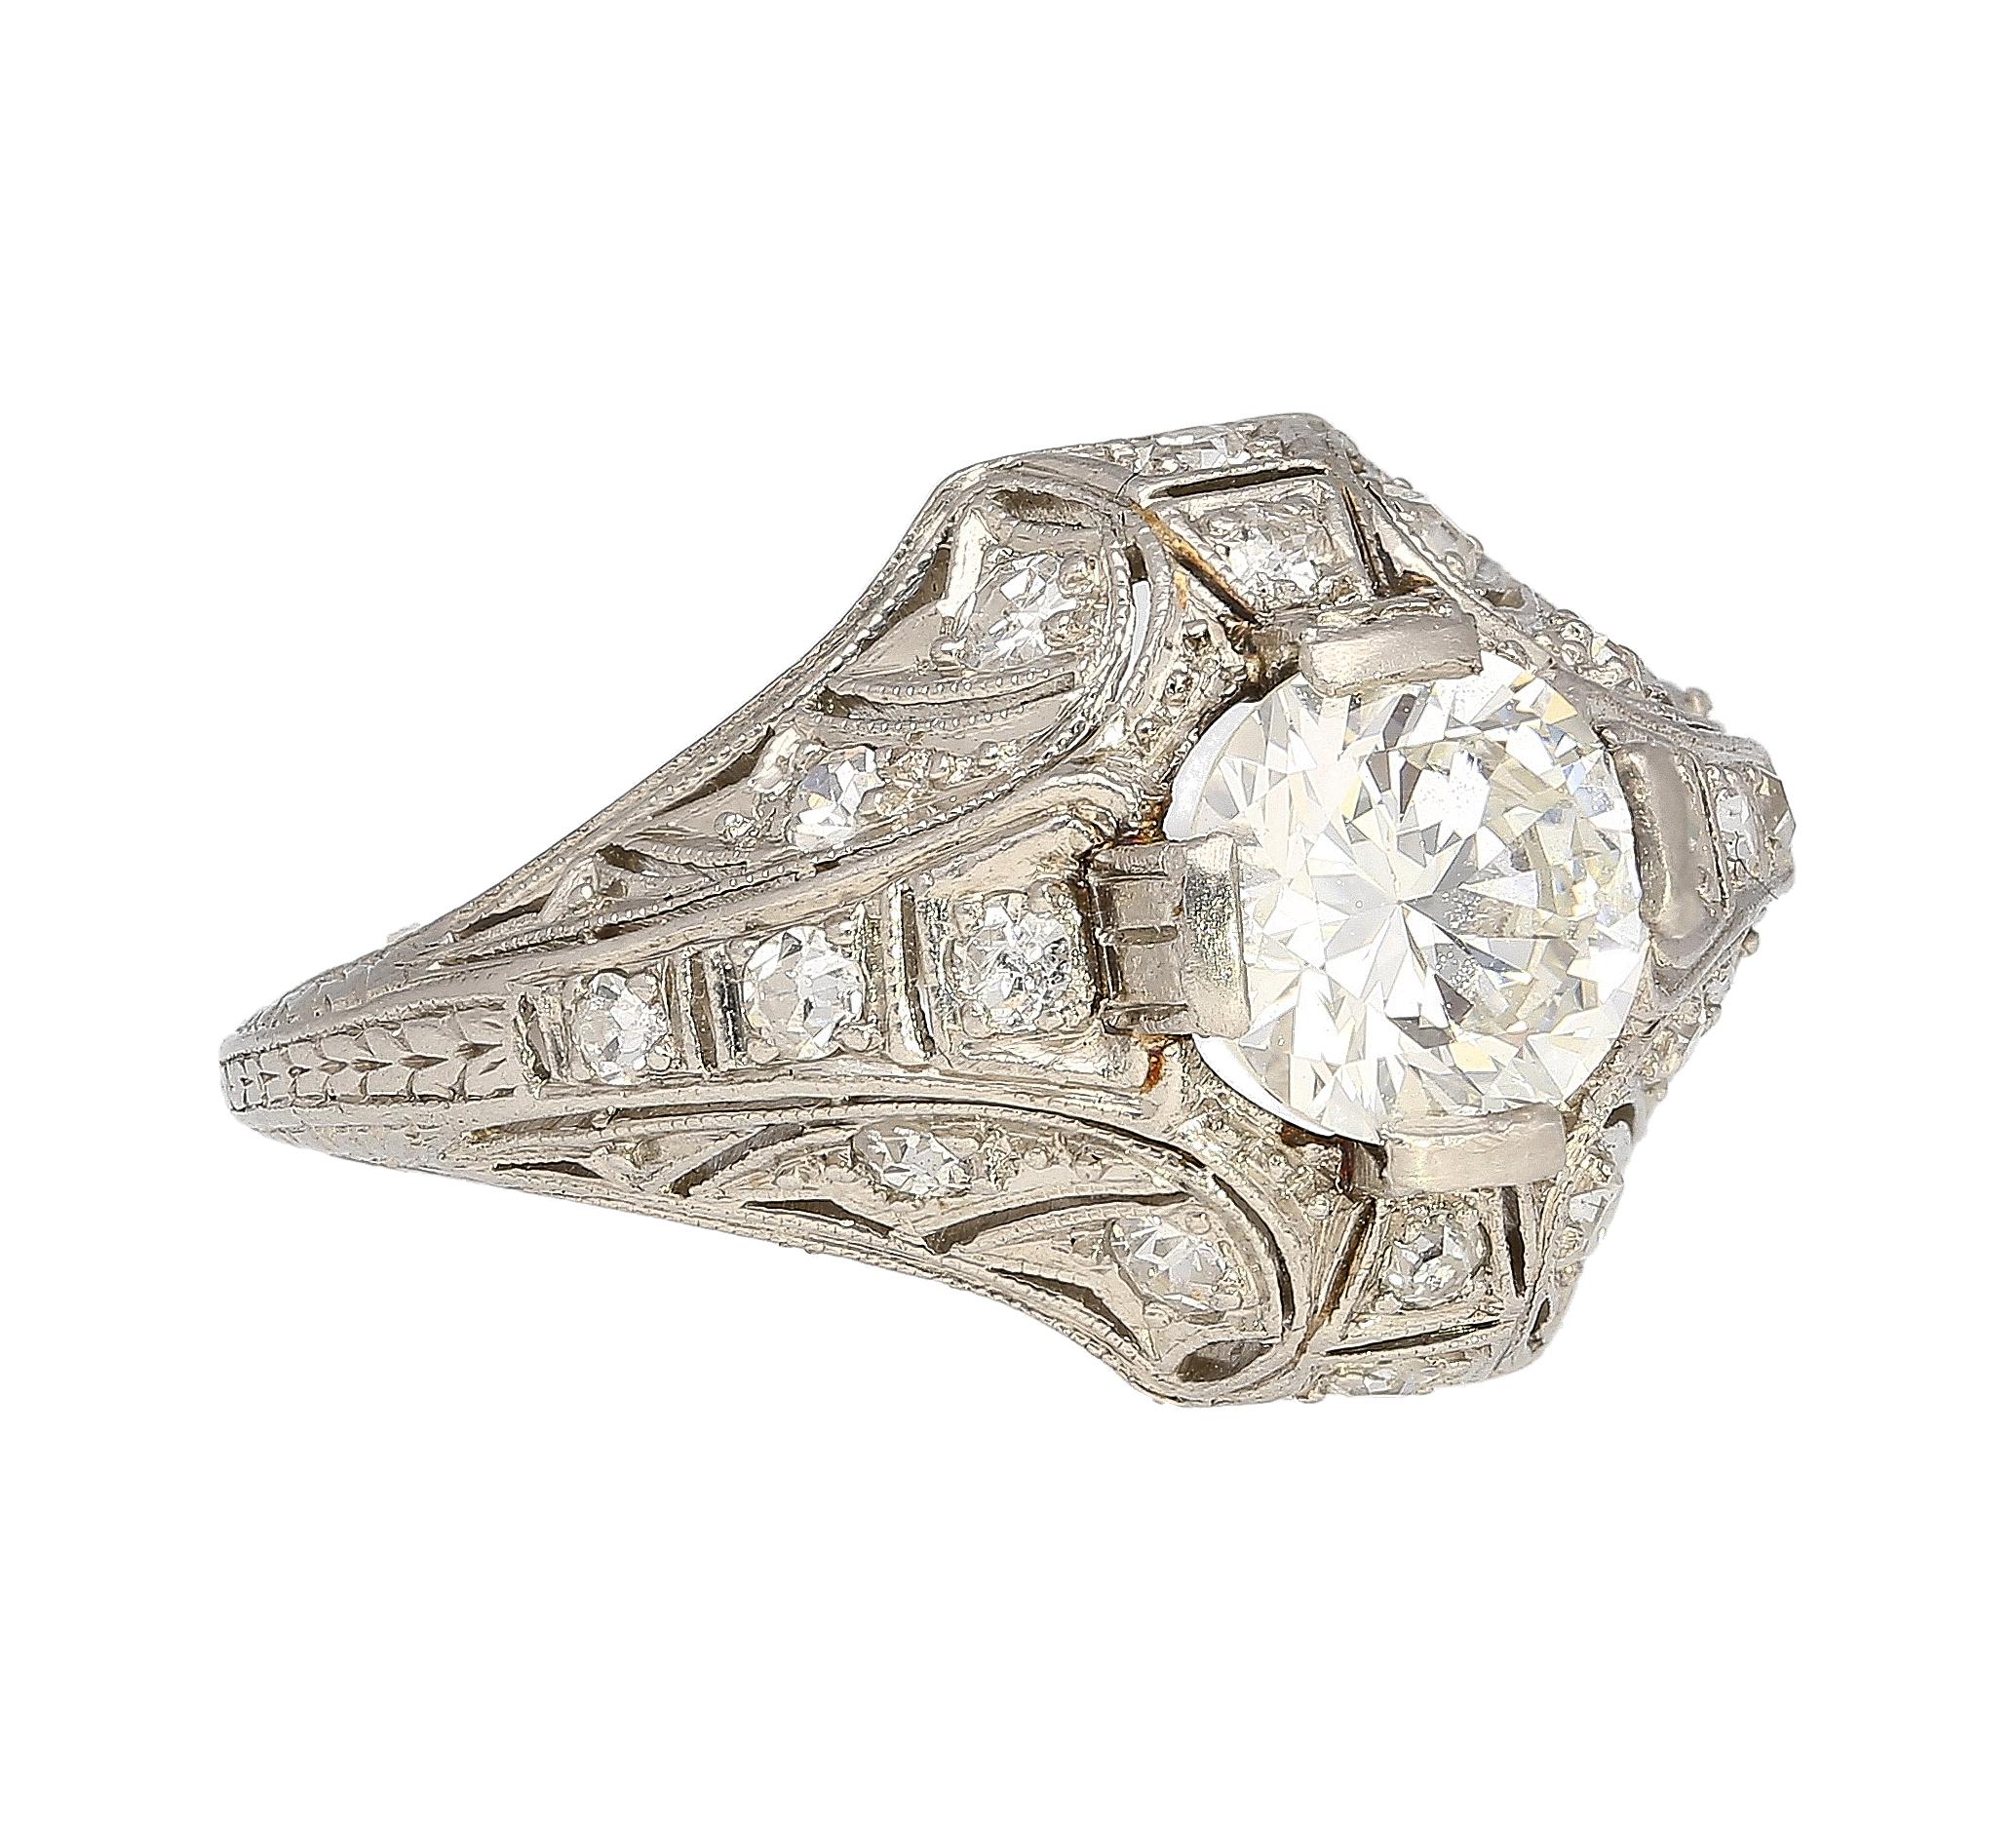 Antique Art Deco Era Platinum 1 Carat Old European Cut Diamond Platinum Ring For Sale 1